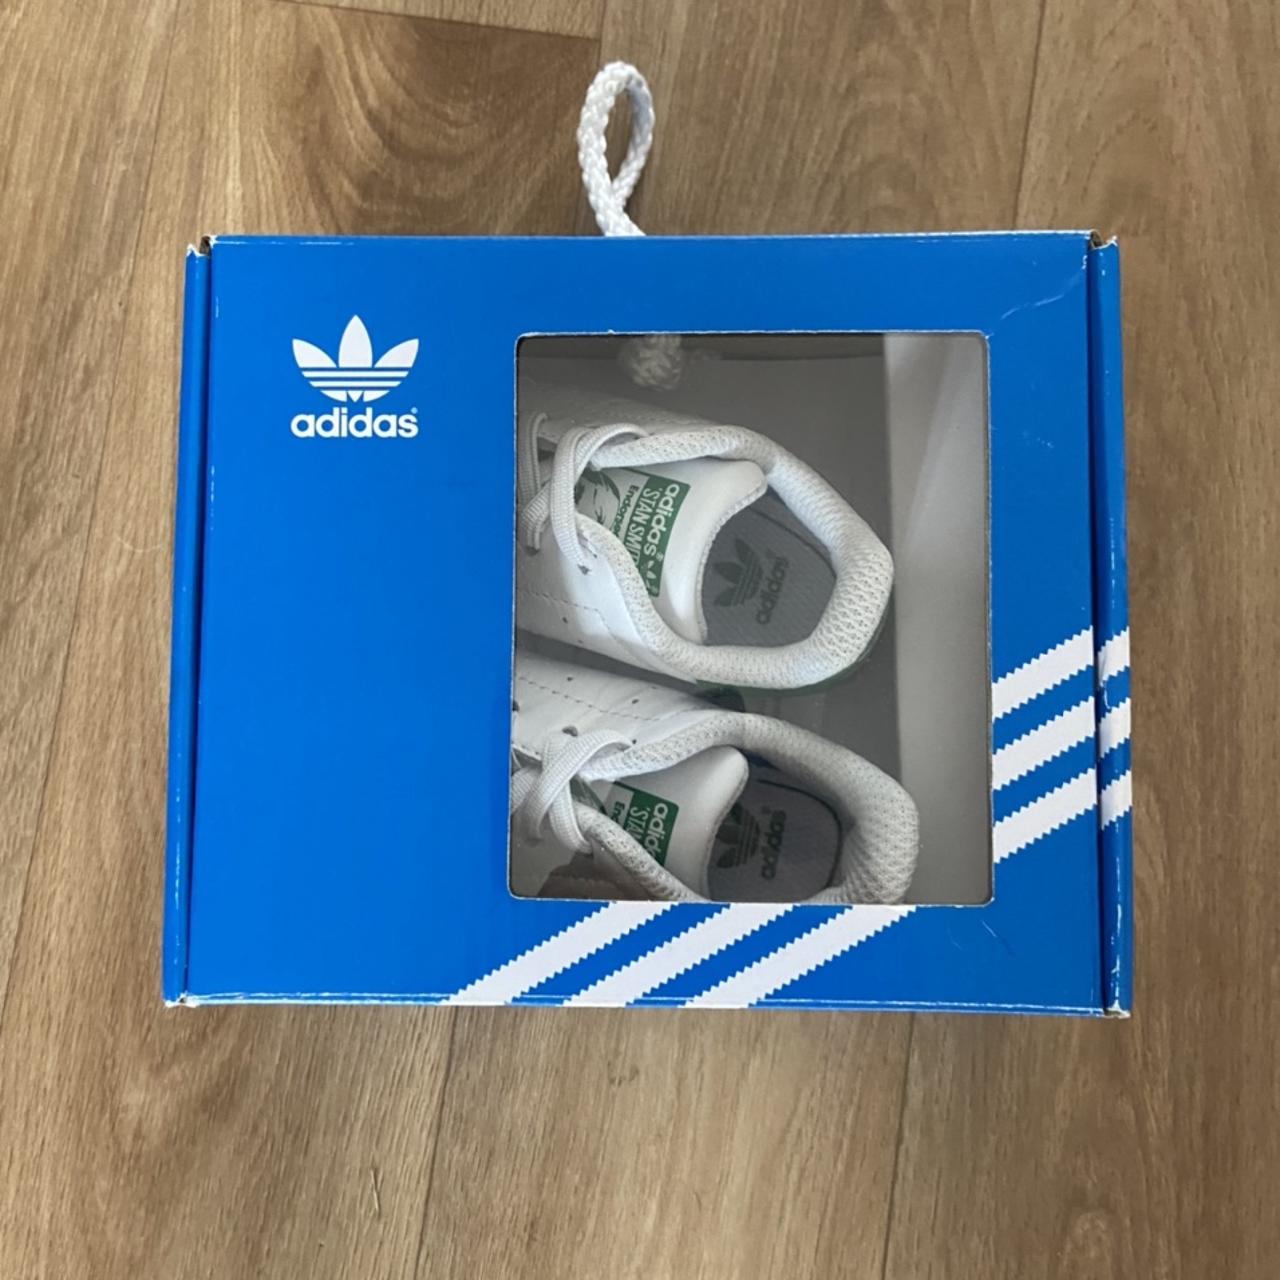 Adidas Stan smiths. Children’s size 2 UK. Brand new... - Depop